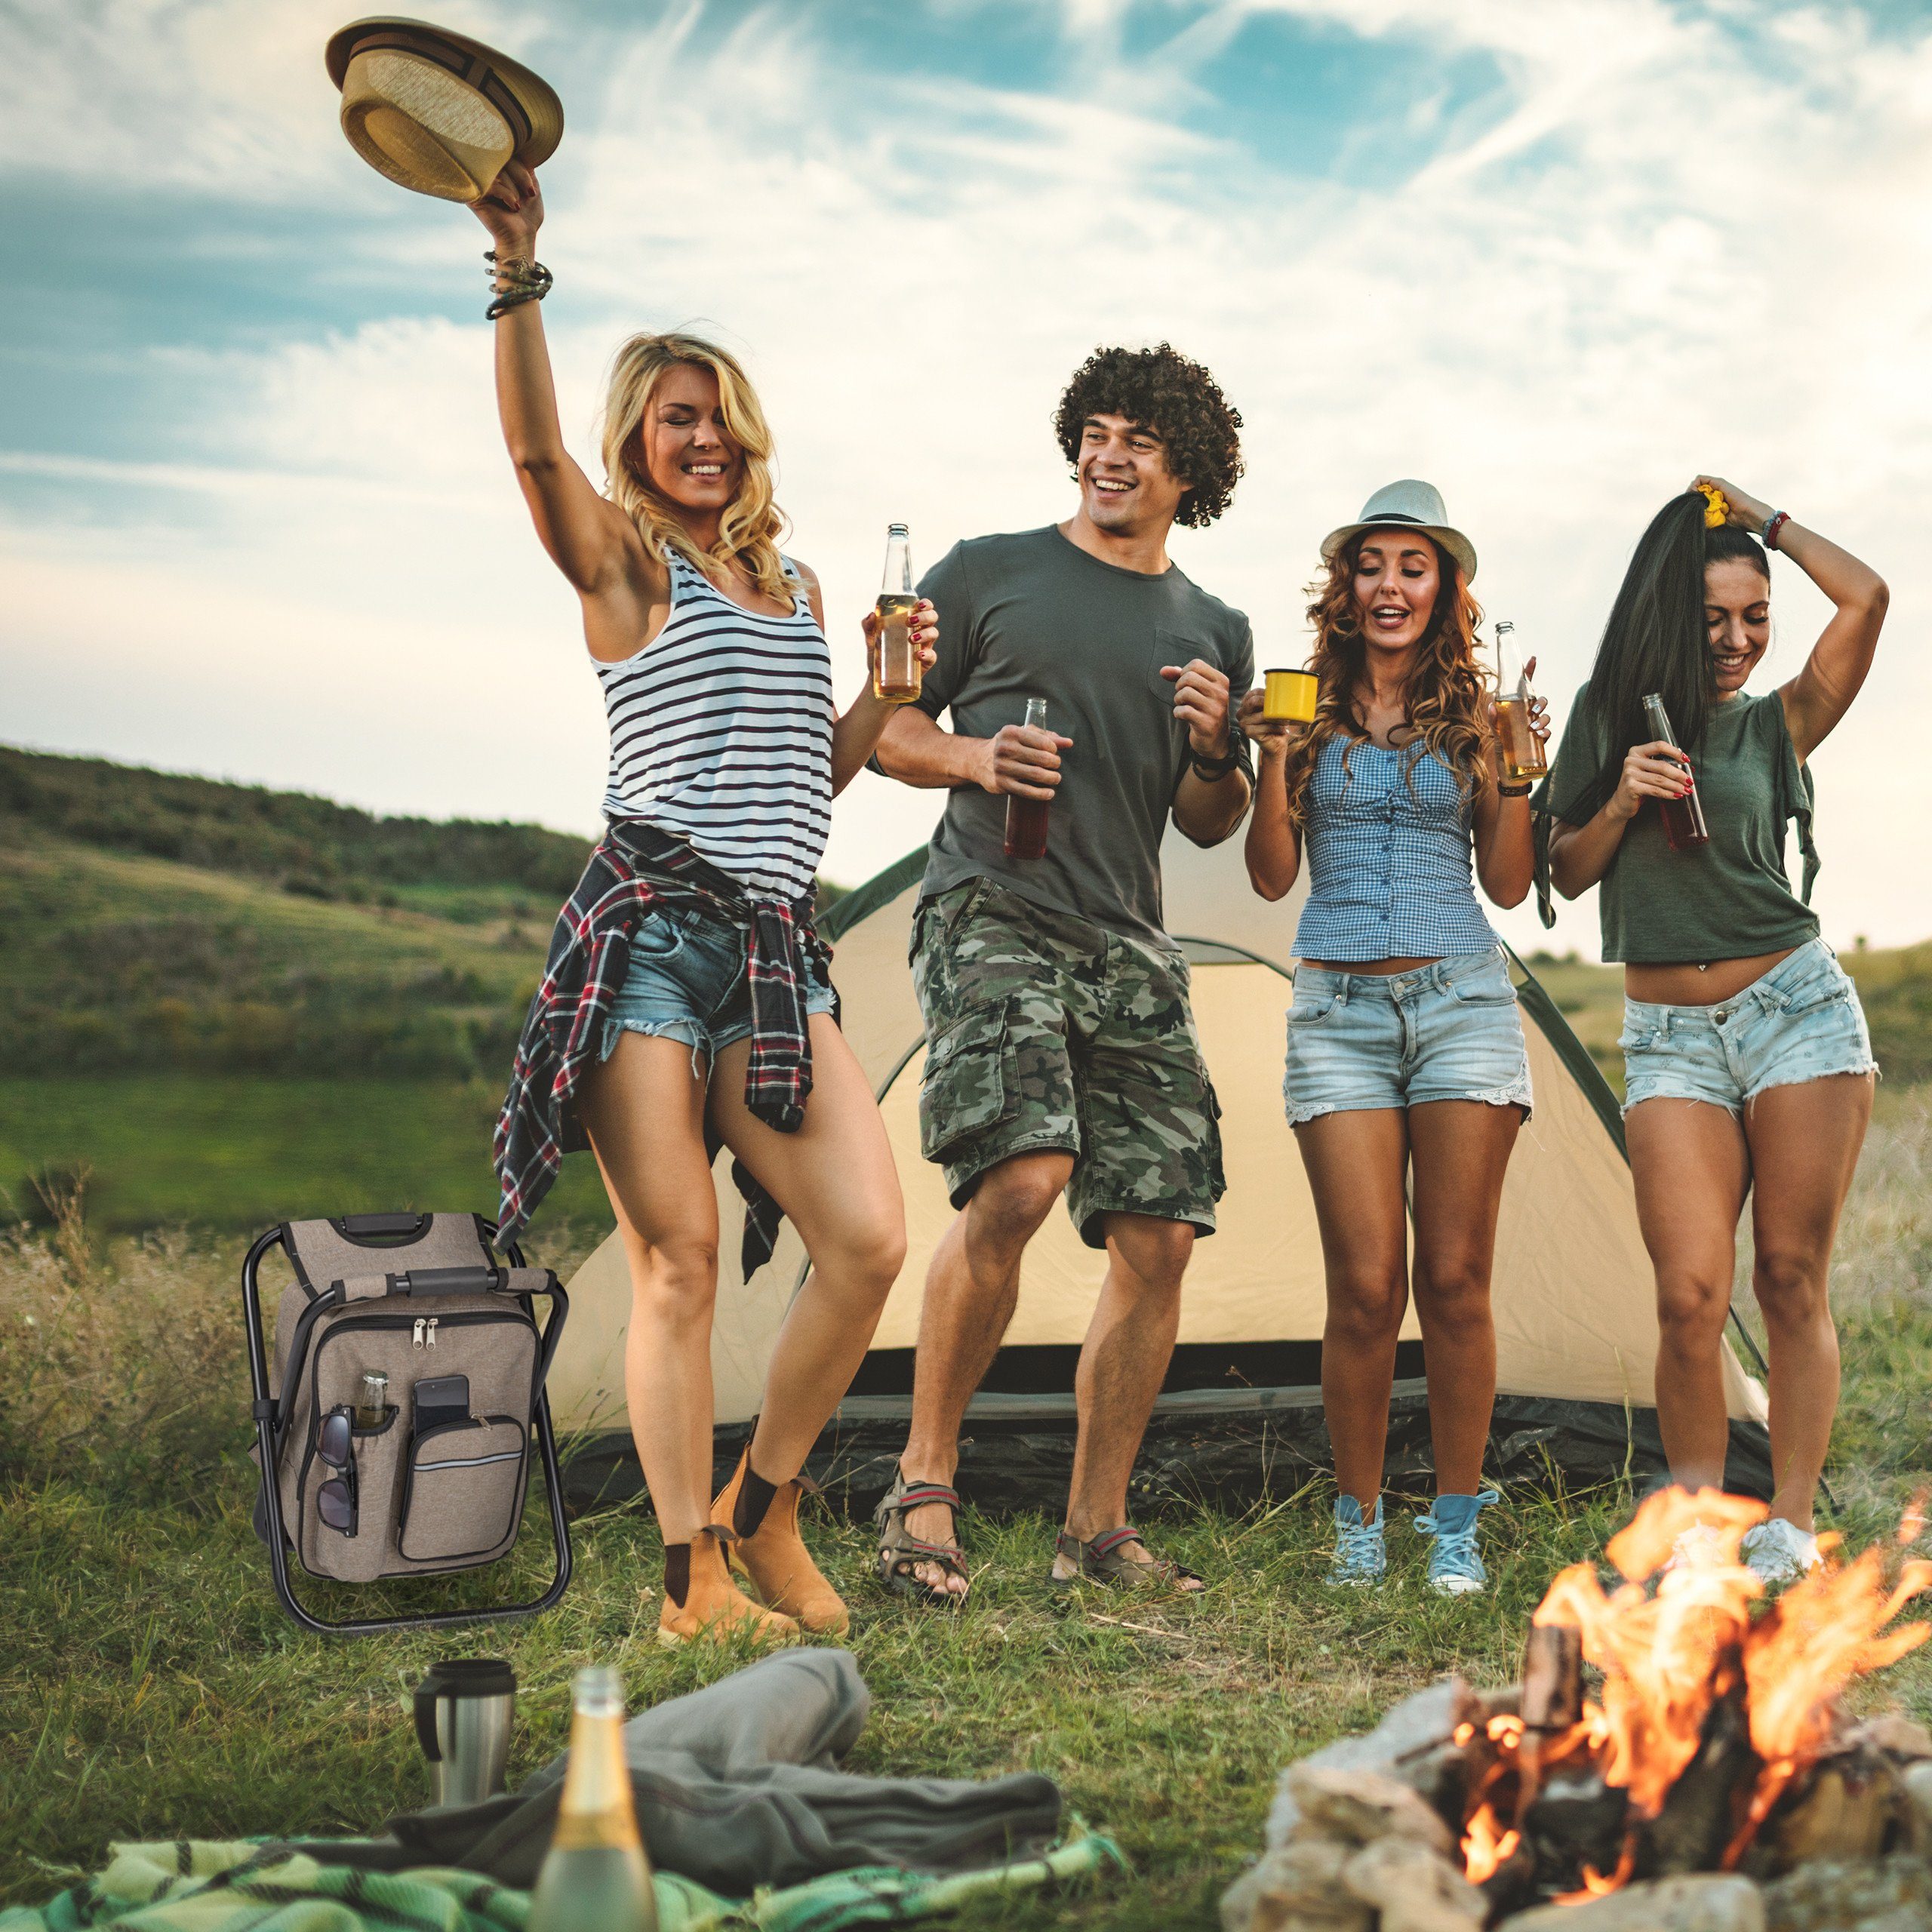 Relaxdays Campinghocker mit Kühltasche faltbar ab 11,99 €